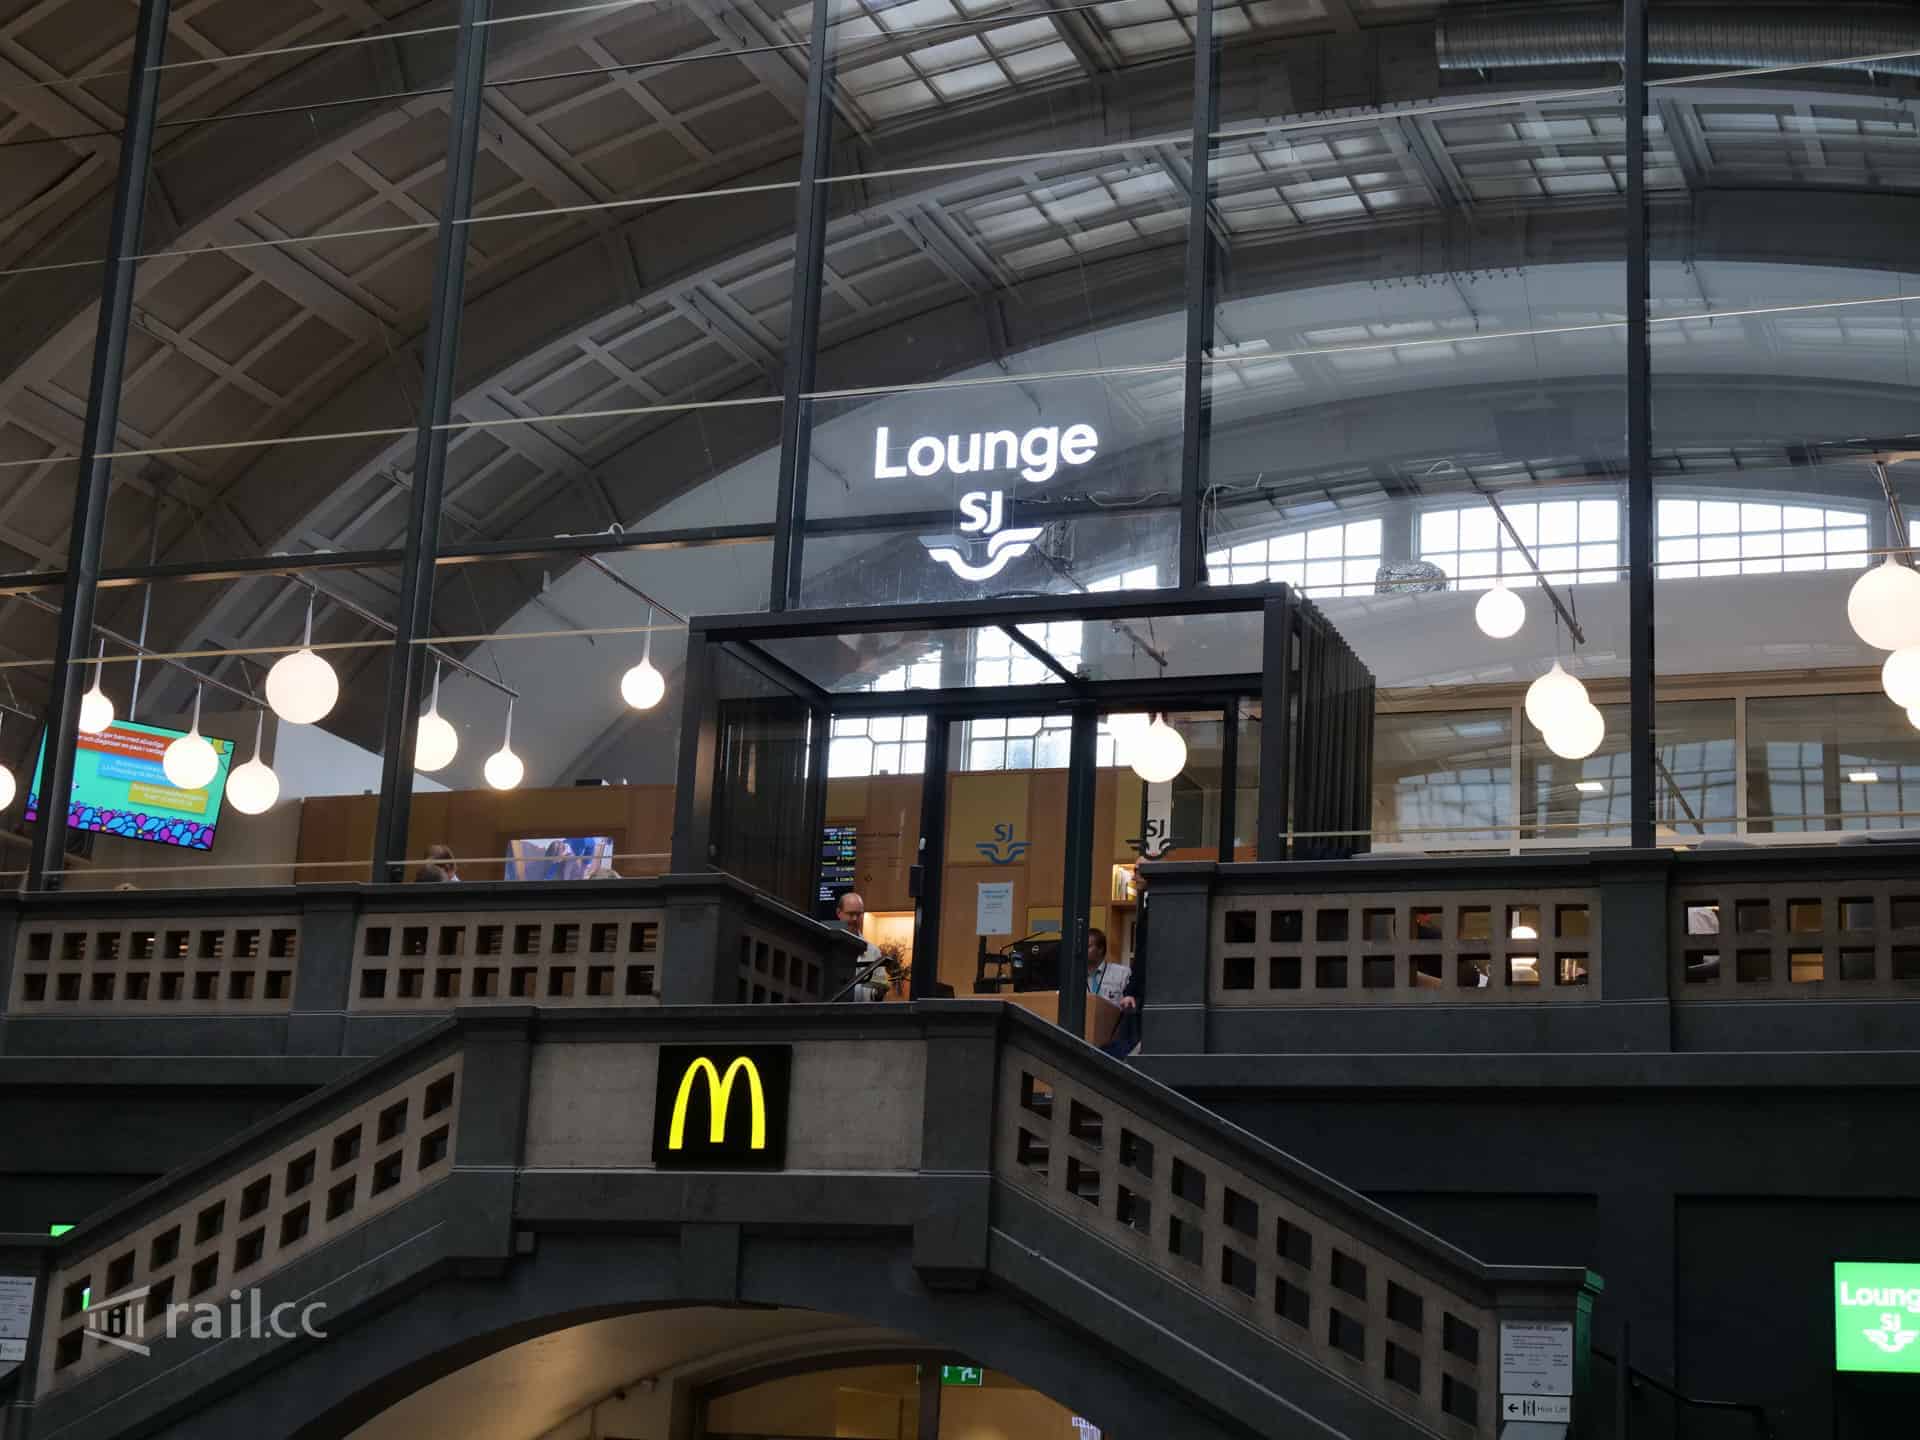 SJ lounge at Stockholm Central station